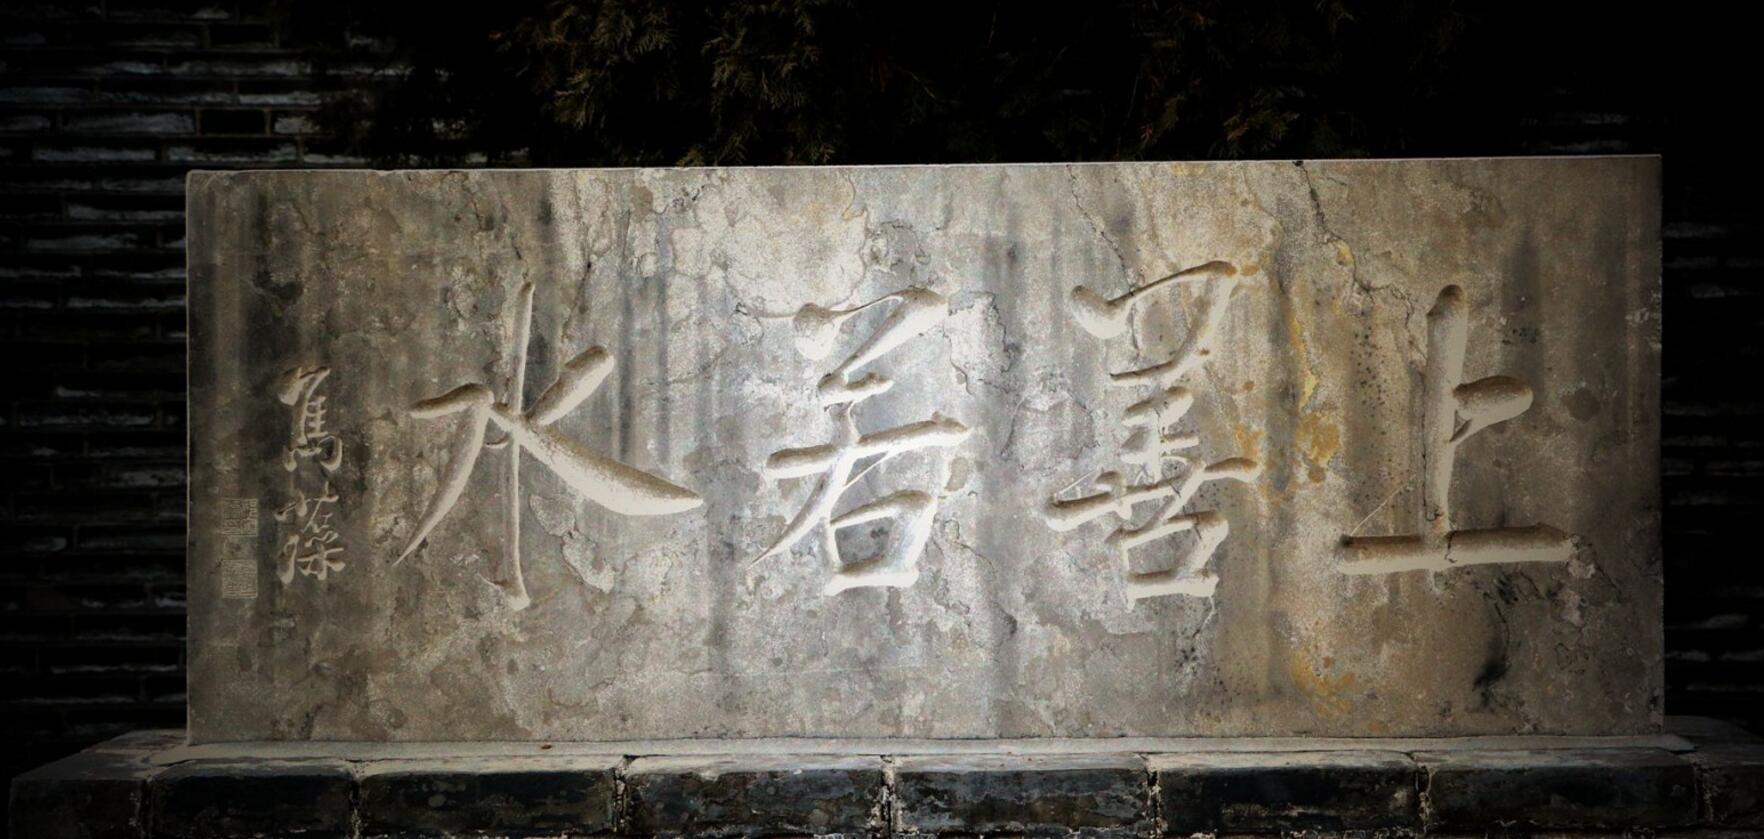 中国通俗小说大家第一人 一一访潜山张恨水纪念馆 - 知乎